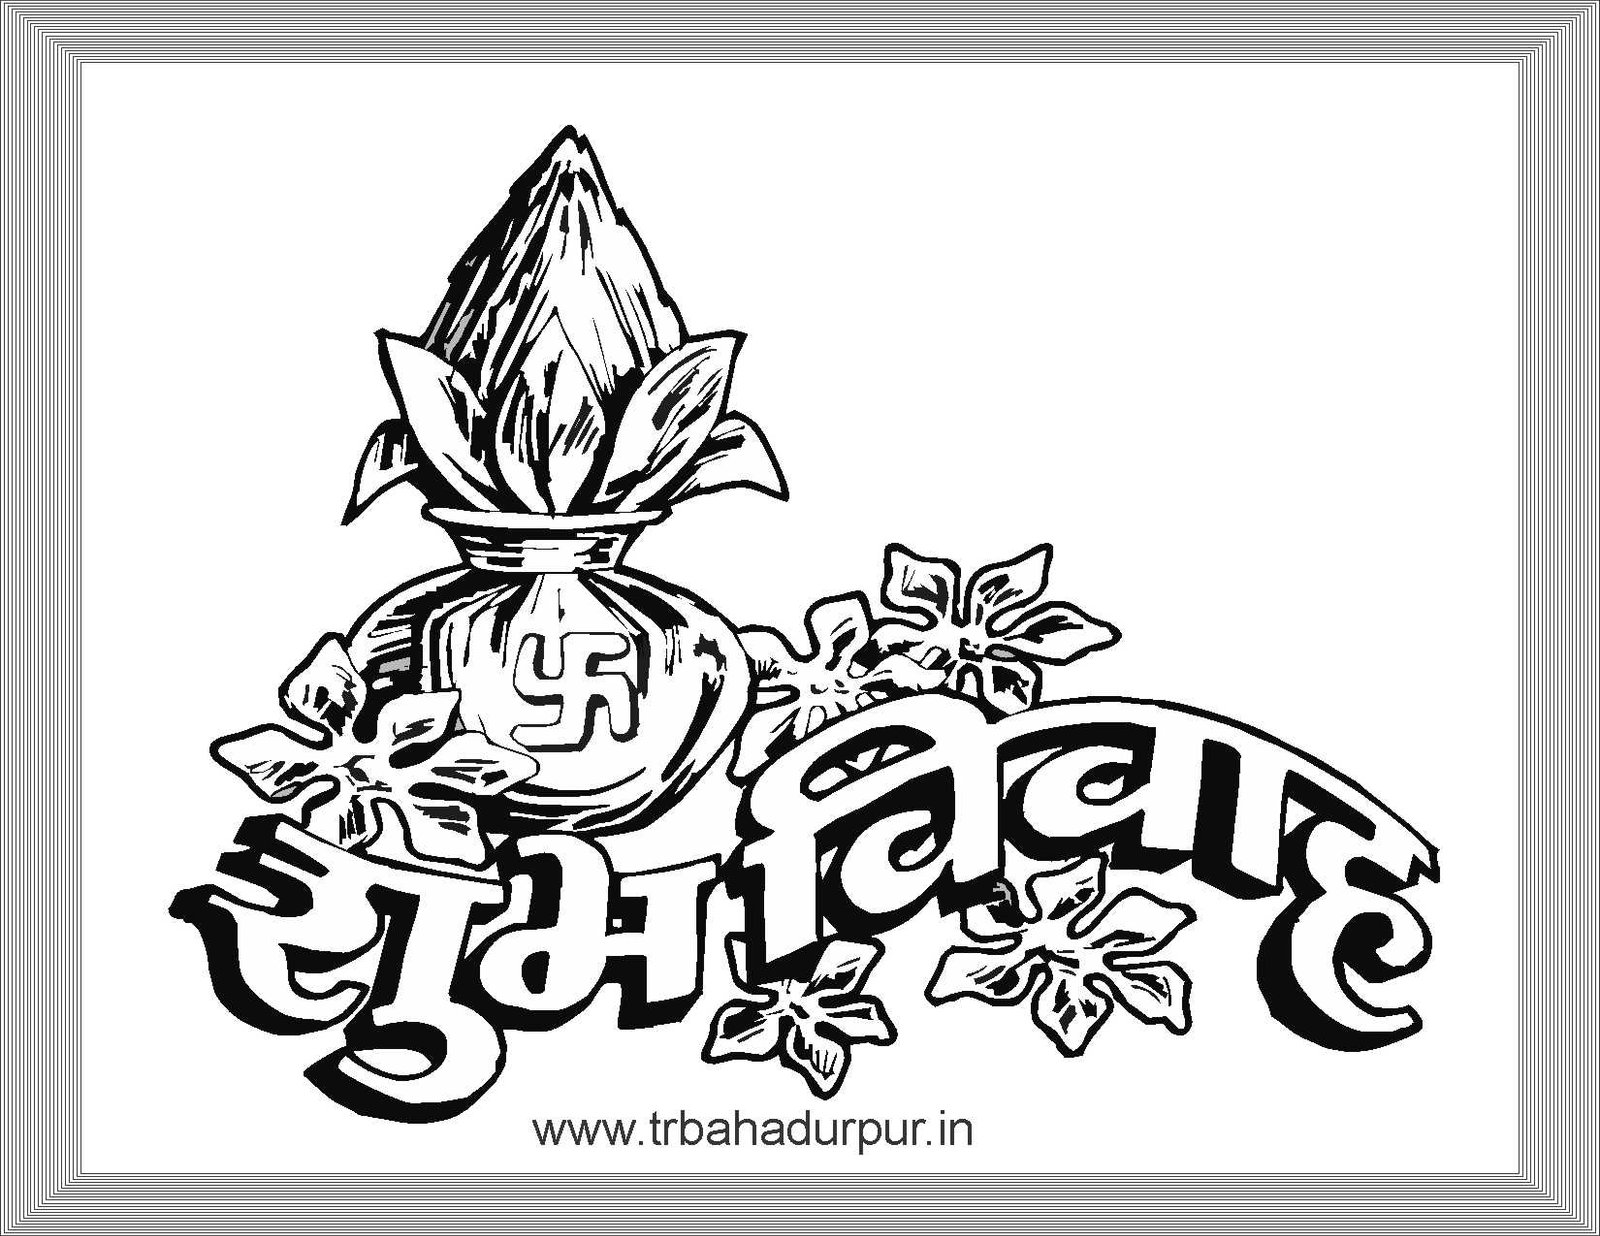 Subh Vivah Logos Hd Free Download Download Free Hd Subh Vivah Logos